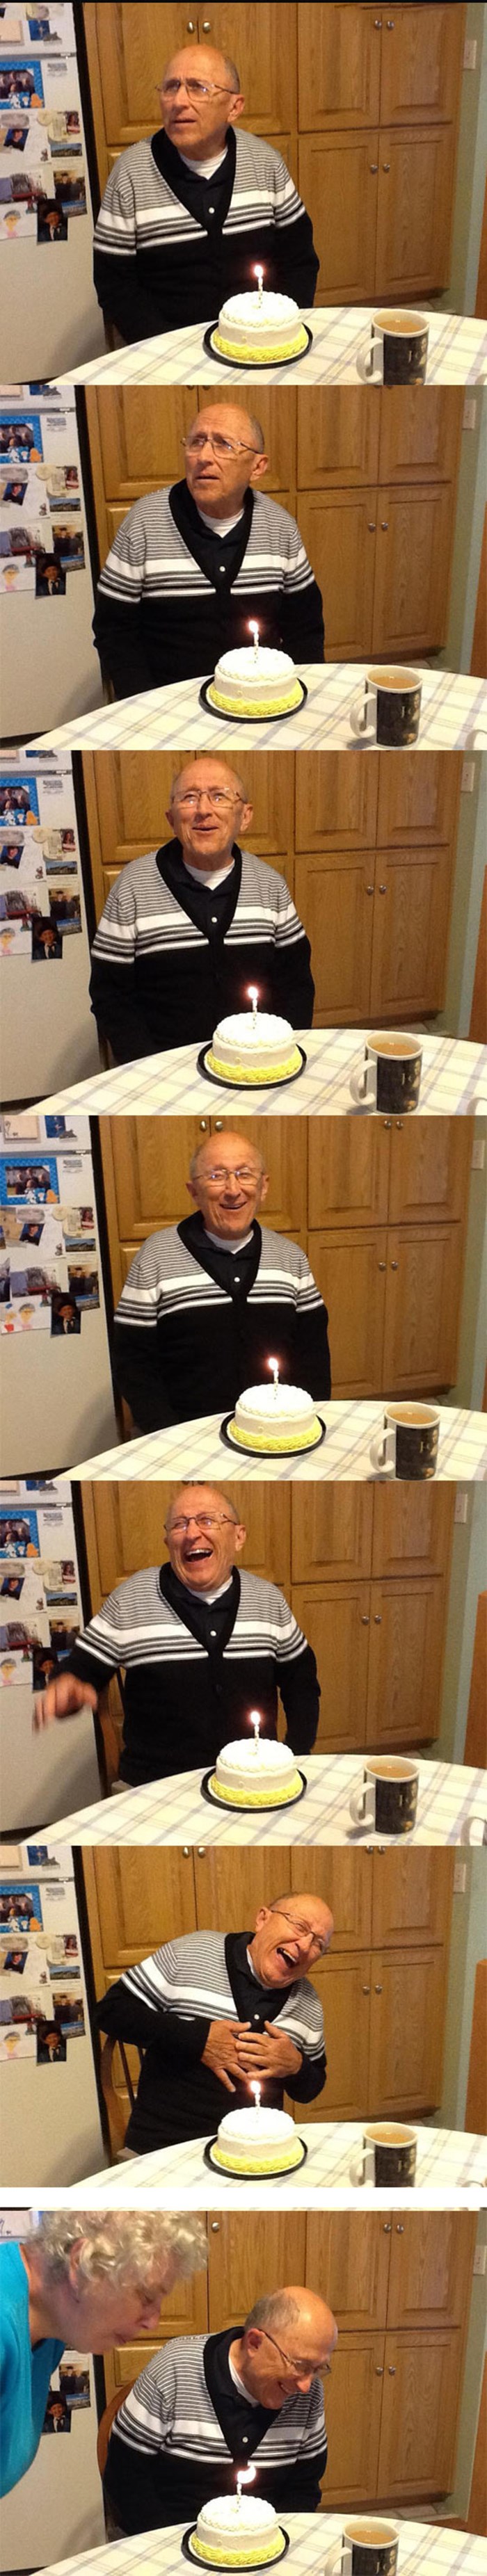 Čovjek koji ima alzheimerovu bolest saznao da mu je rođendan, reakcija sve govori 